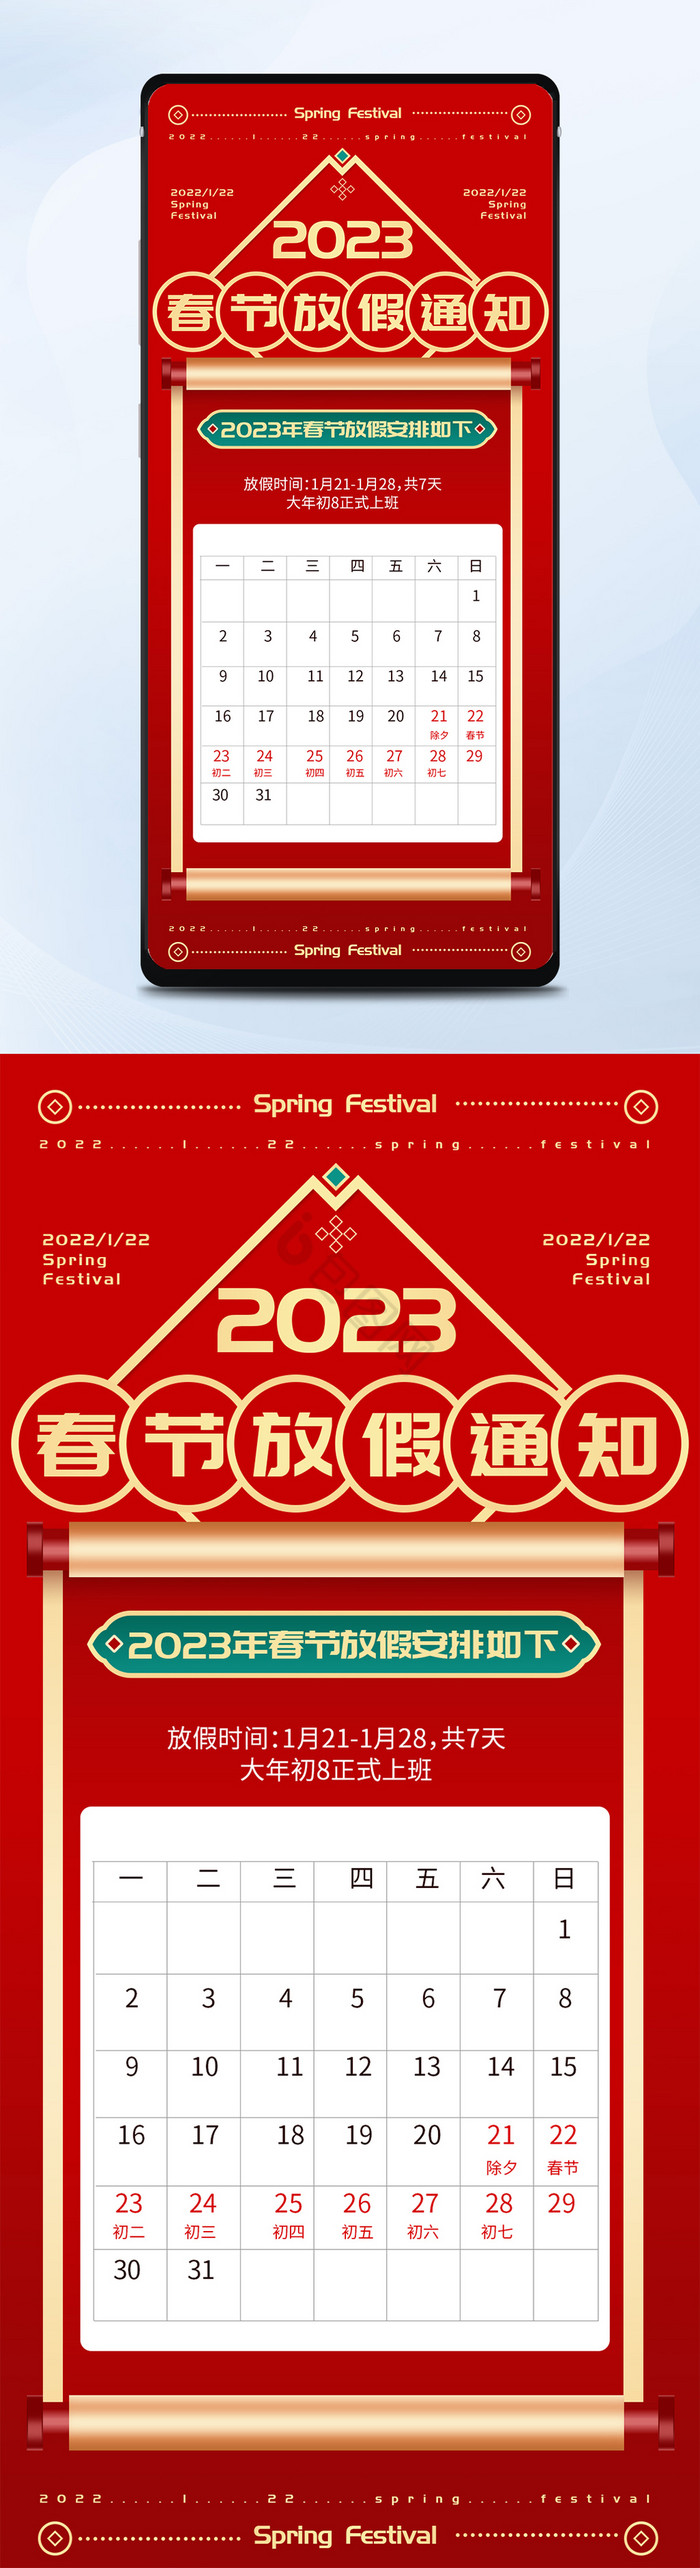 红色简约风春节放假通知相关海报